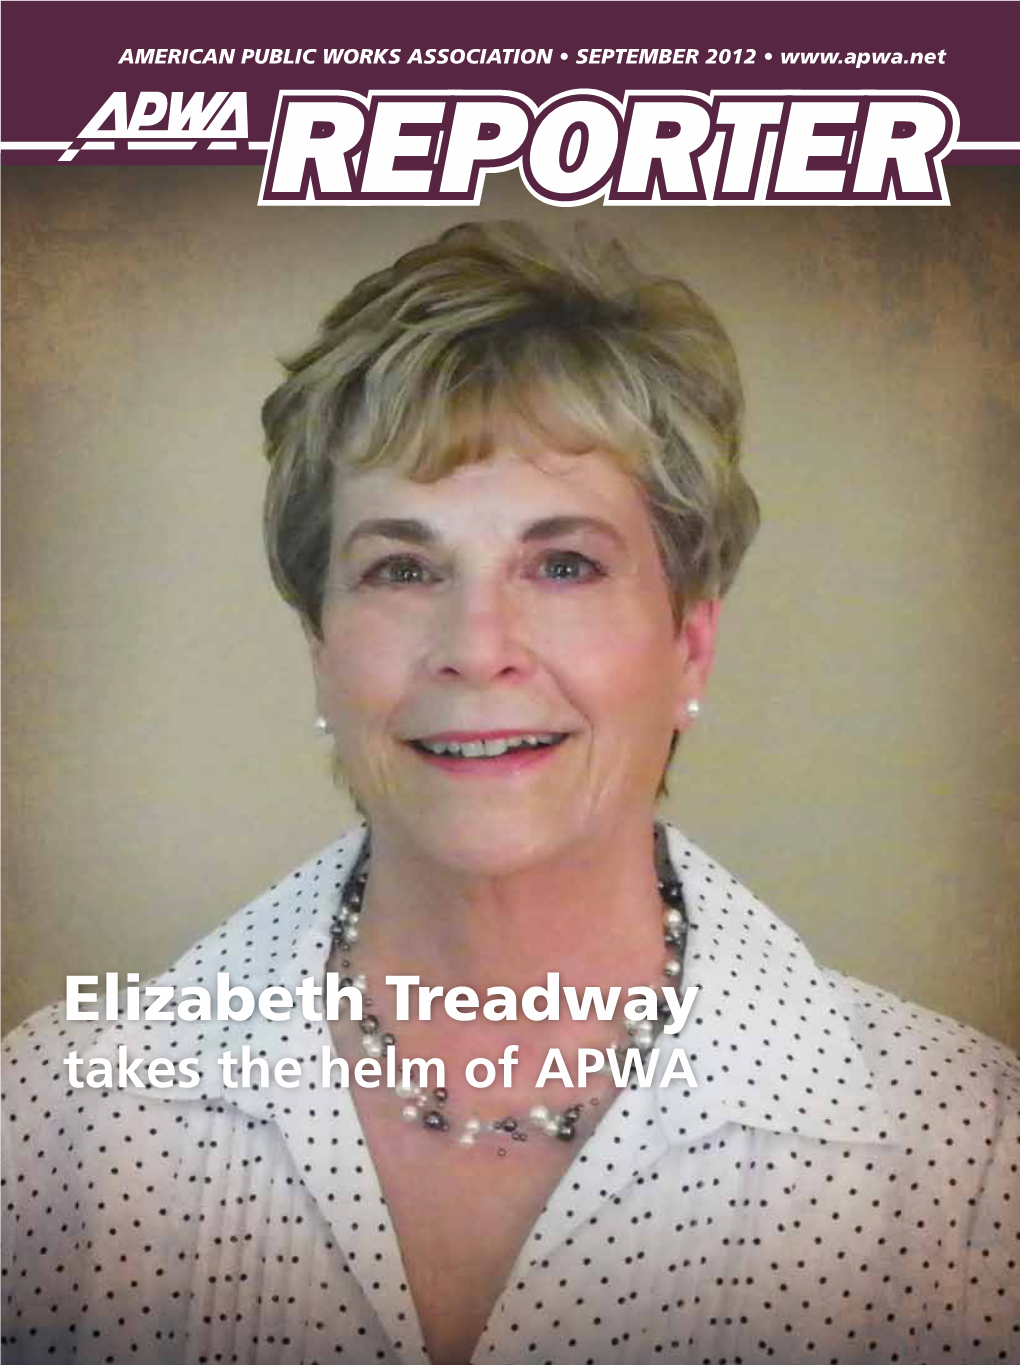 Elizabeth Treadway